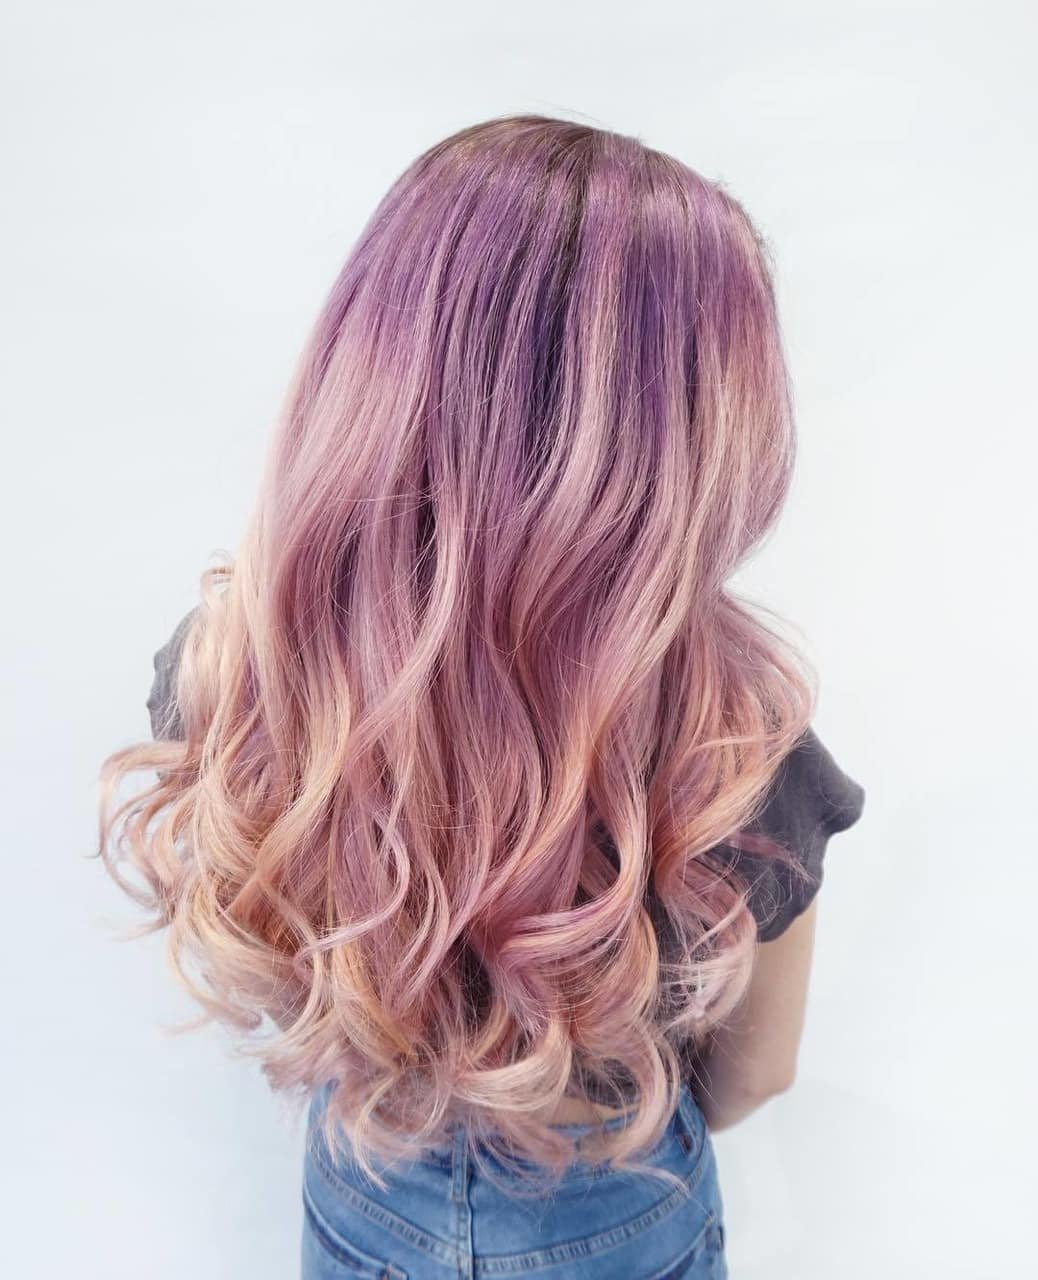 Русый розовый цвет волос